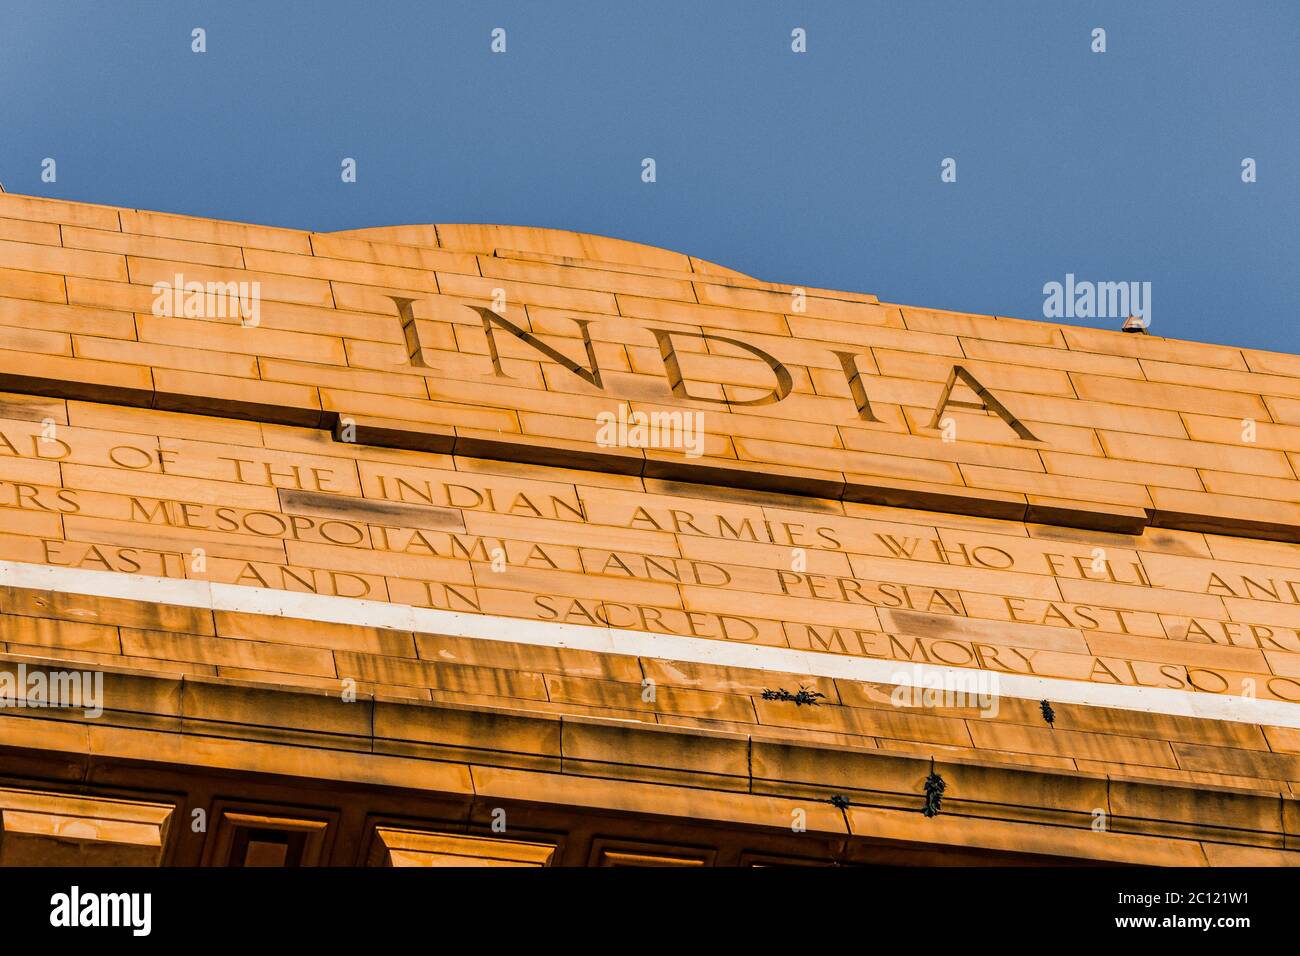 India Gate War Memorial situato a Nuova Delhi, India. India Gate è l'attrazione turistica più popolare da visitare a Nuova Delhi. Nuova Delhi è la capitale. Foto Stock